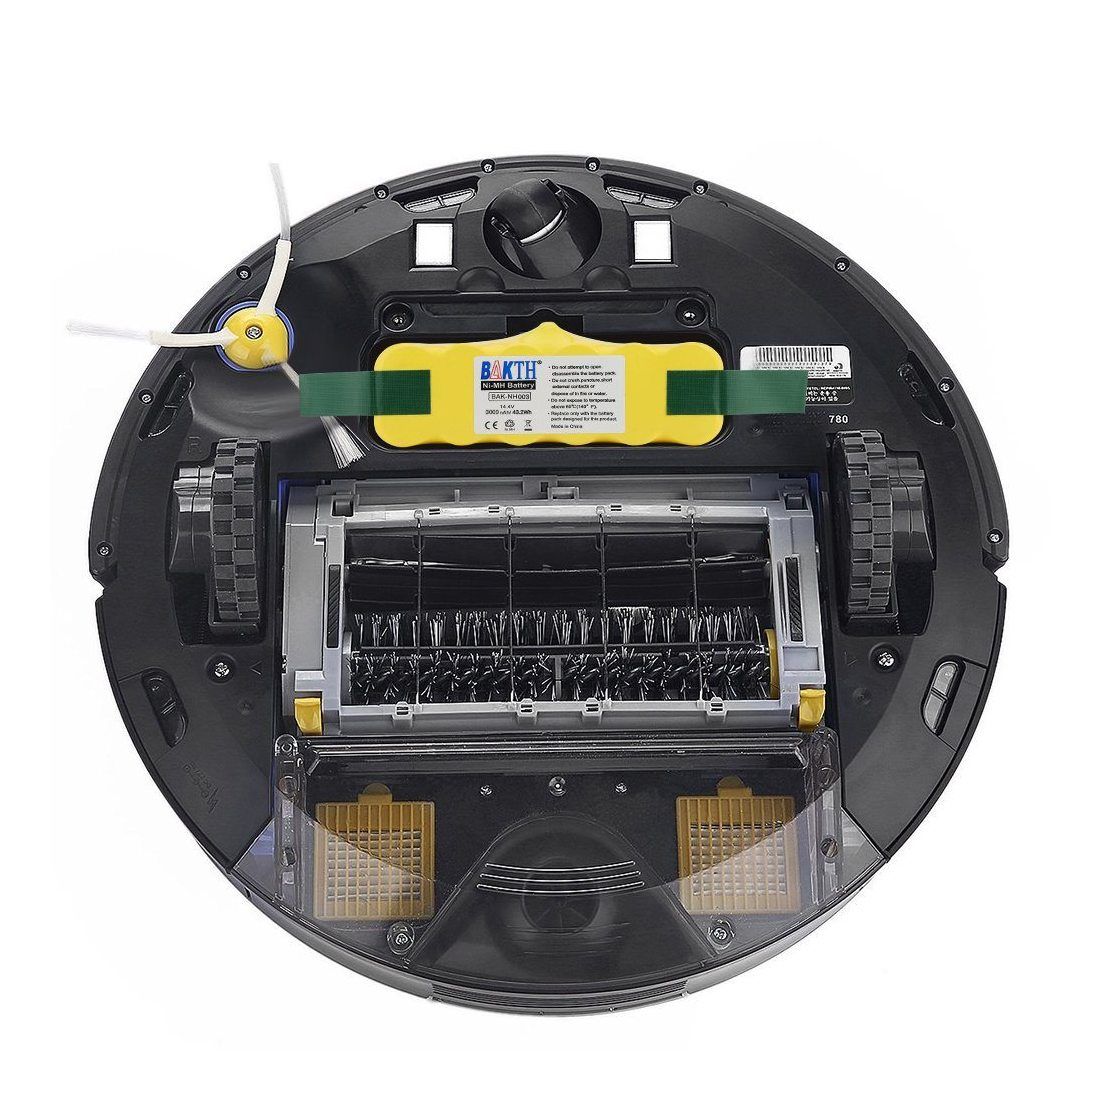 BAKTH Batterie de rechange Ni-MH 3000mAh pour Aspirateur iRobot Roomba 500 600 700 800 510 530 532 535 540 545 550 552 560 56